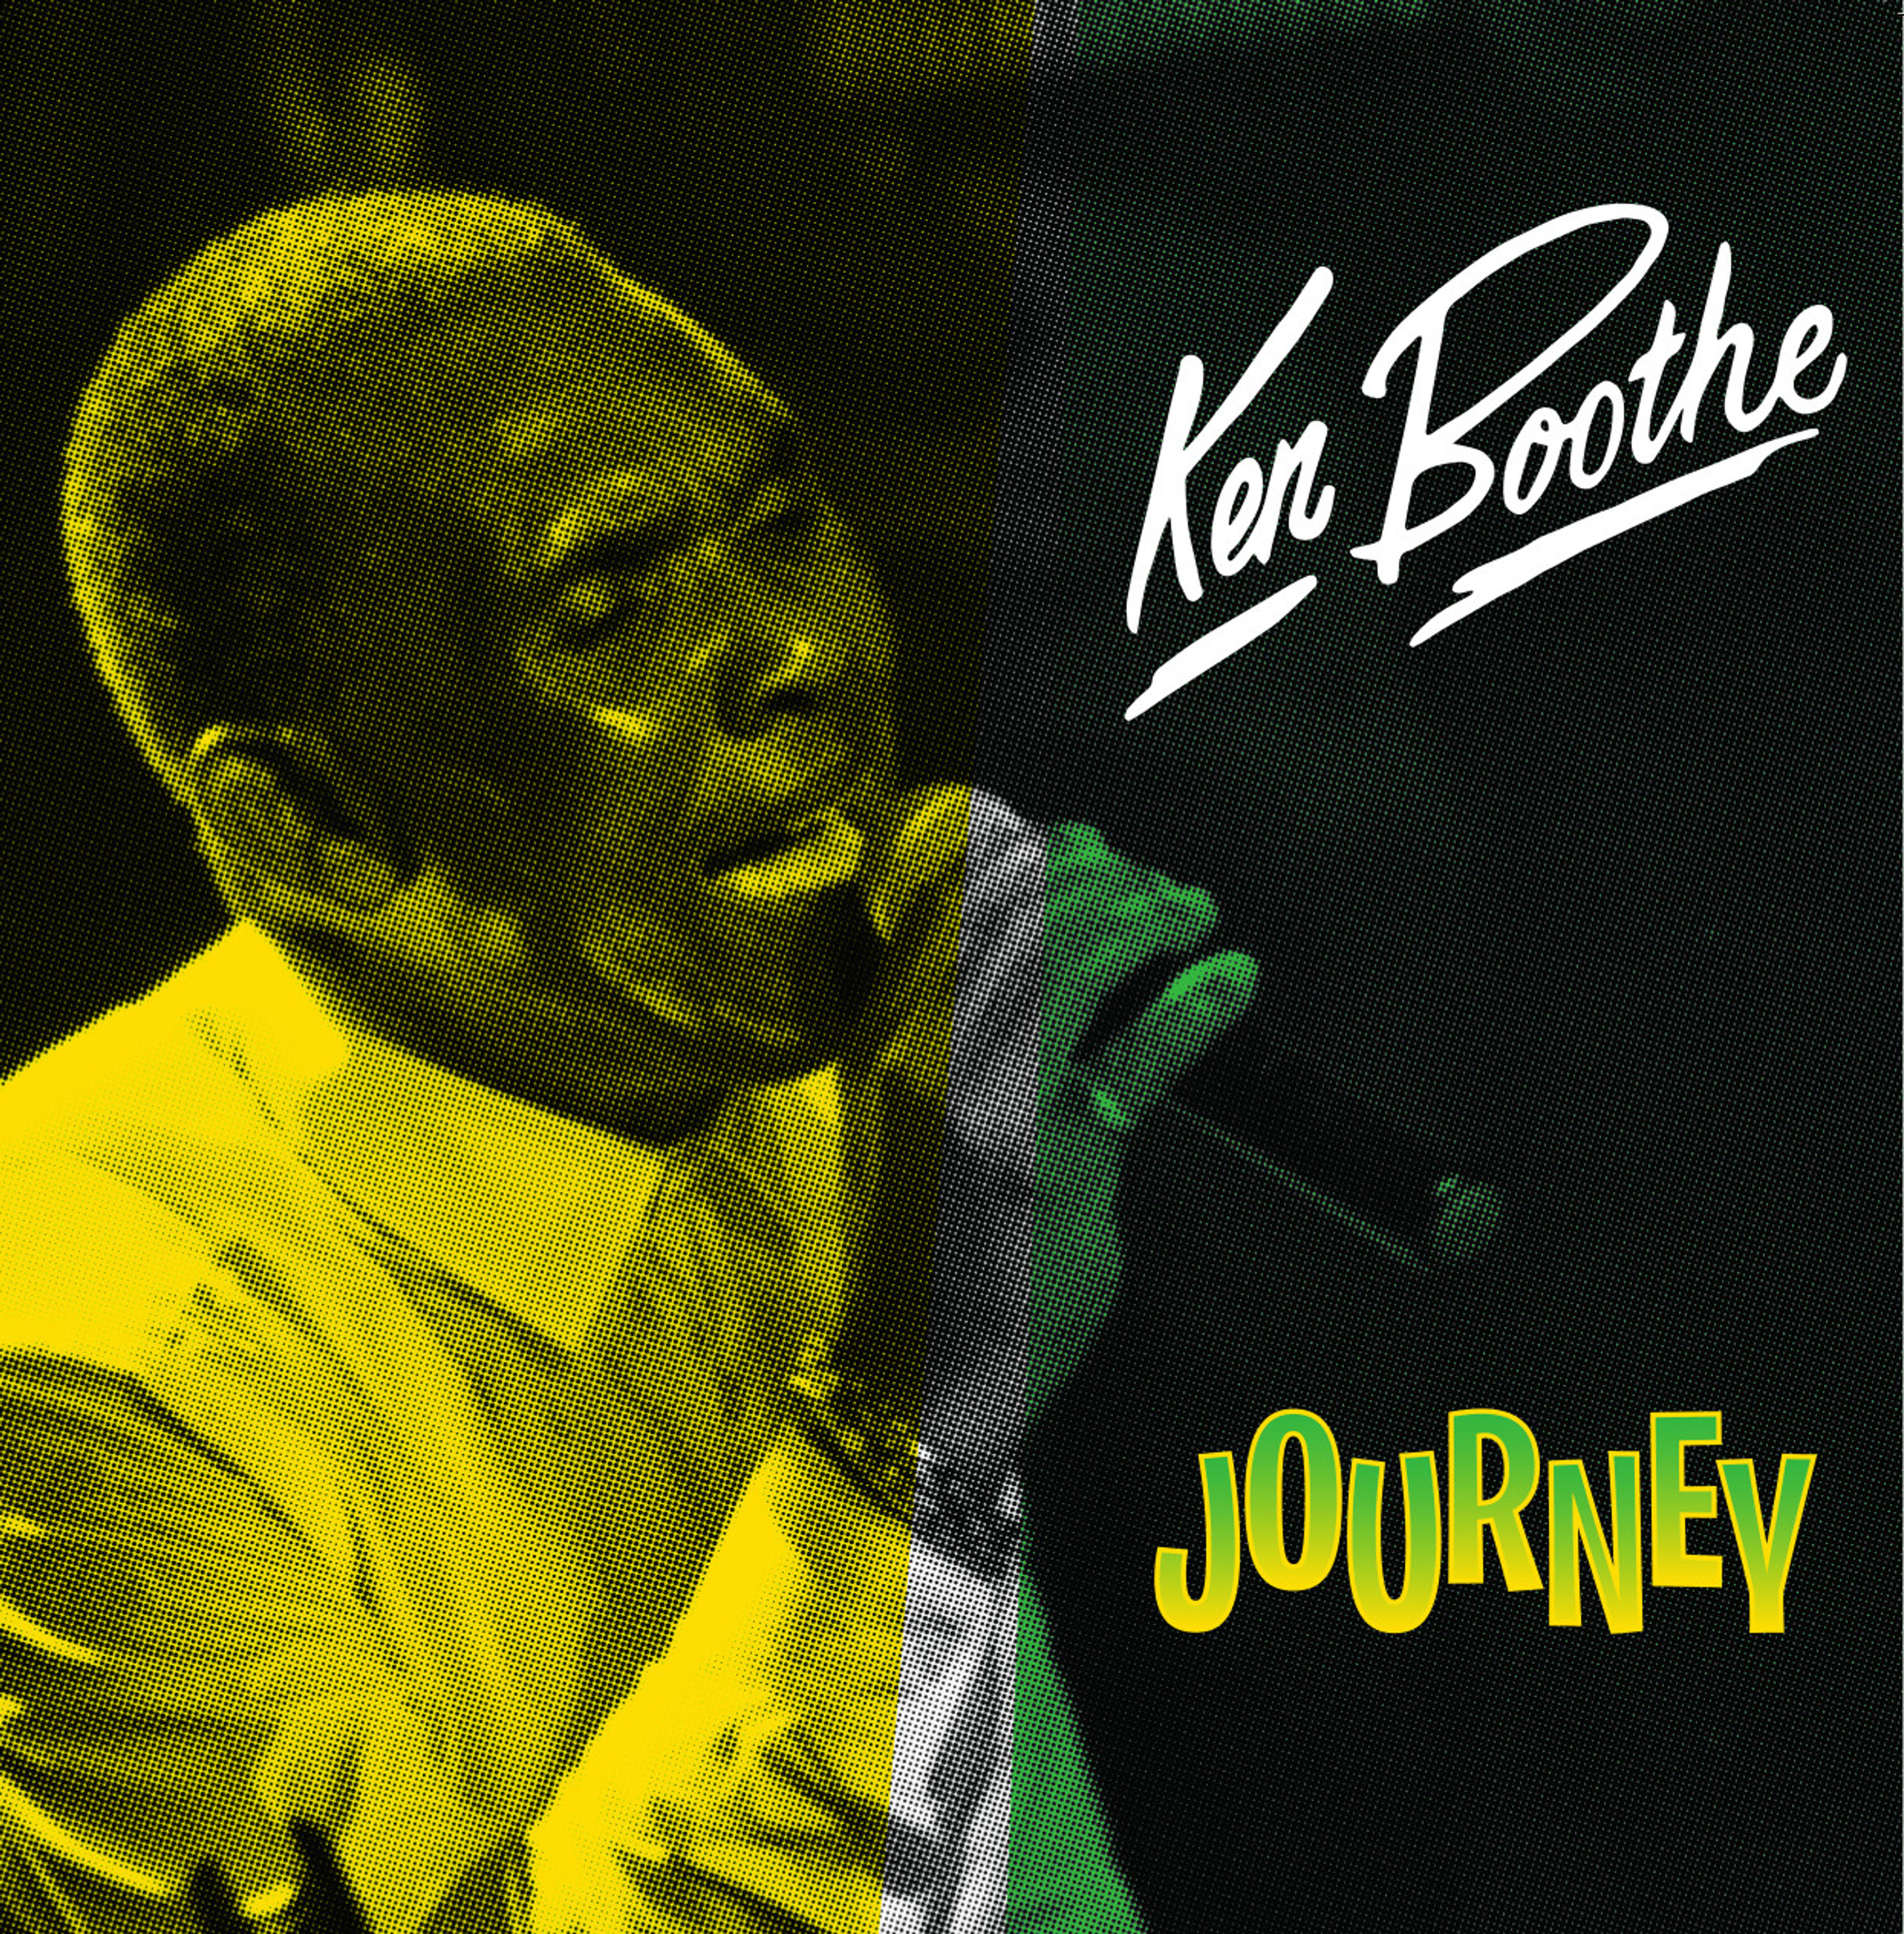 Ken Boothe - Journey (LP) 